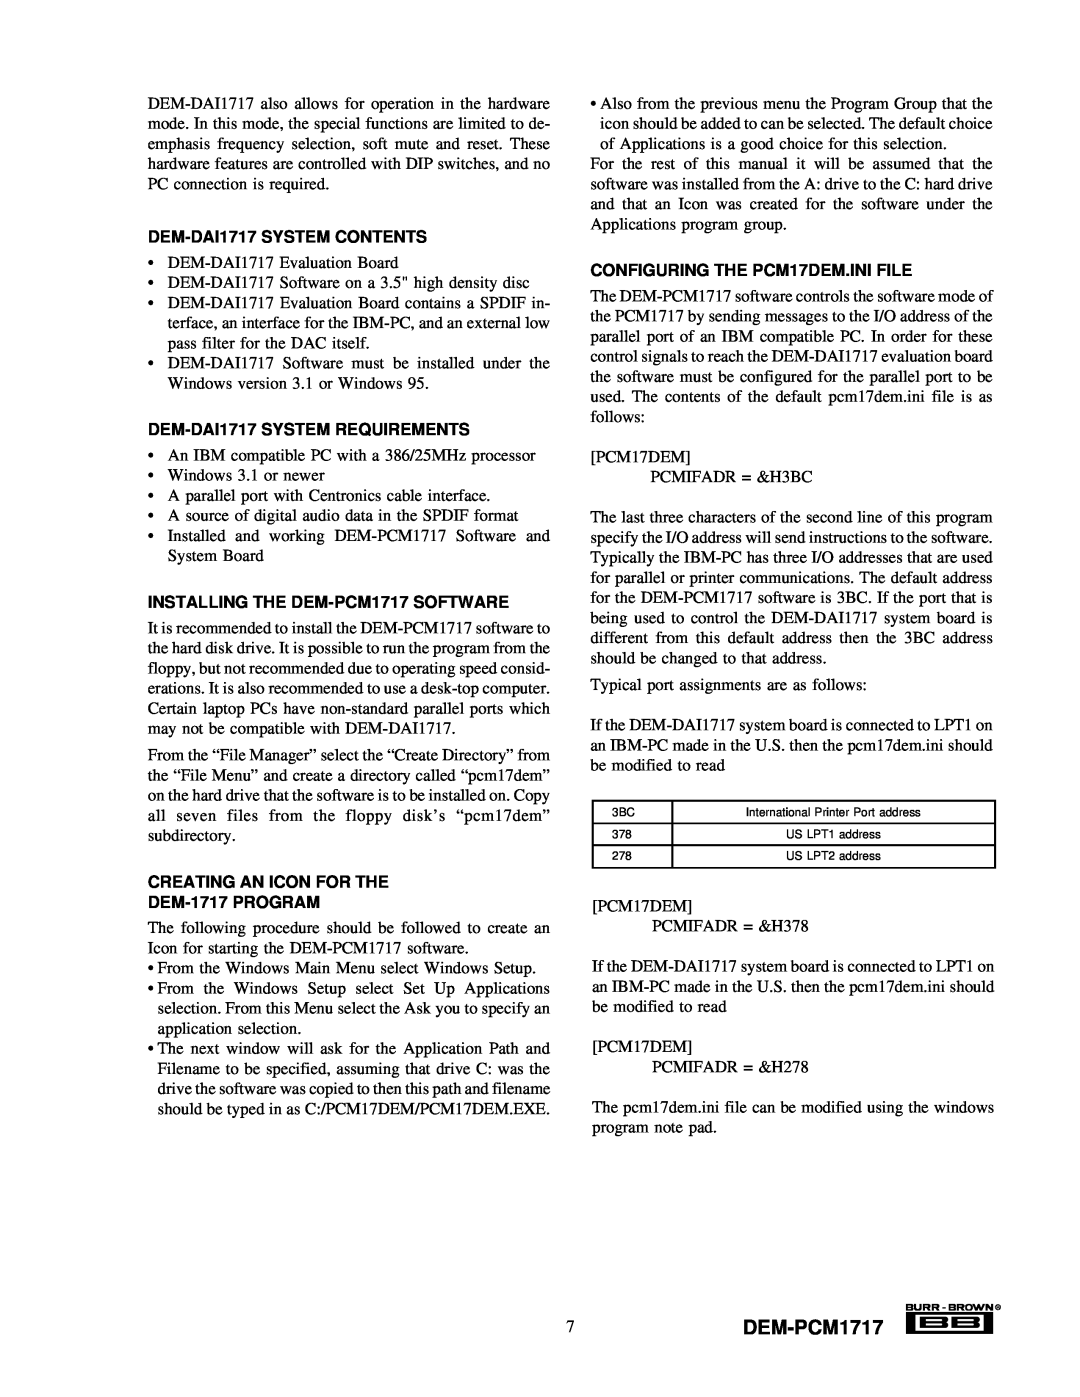 Texas Instruments manual 7DEM-PCM1717, DEM-DAI1717SYSTEM CONTENTS, DEM-DAI1717SYSTEM REQUIREMENTS 